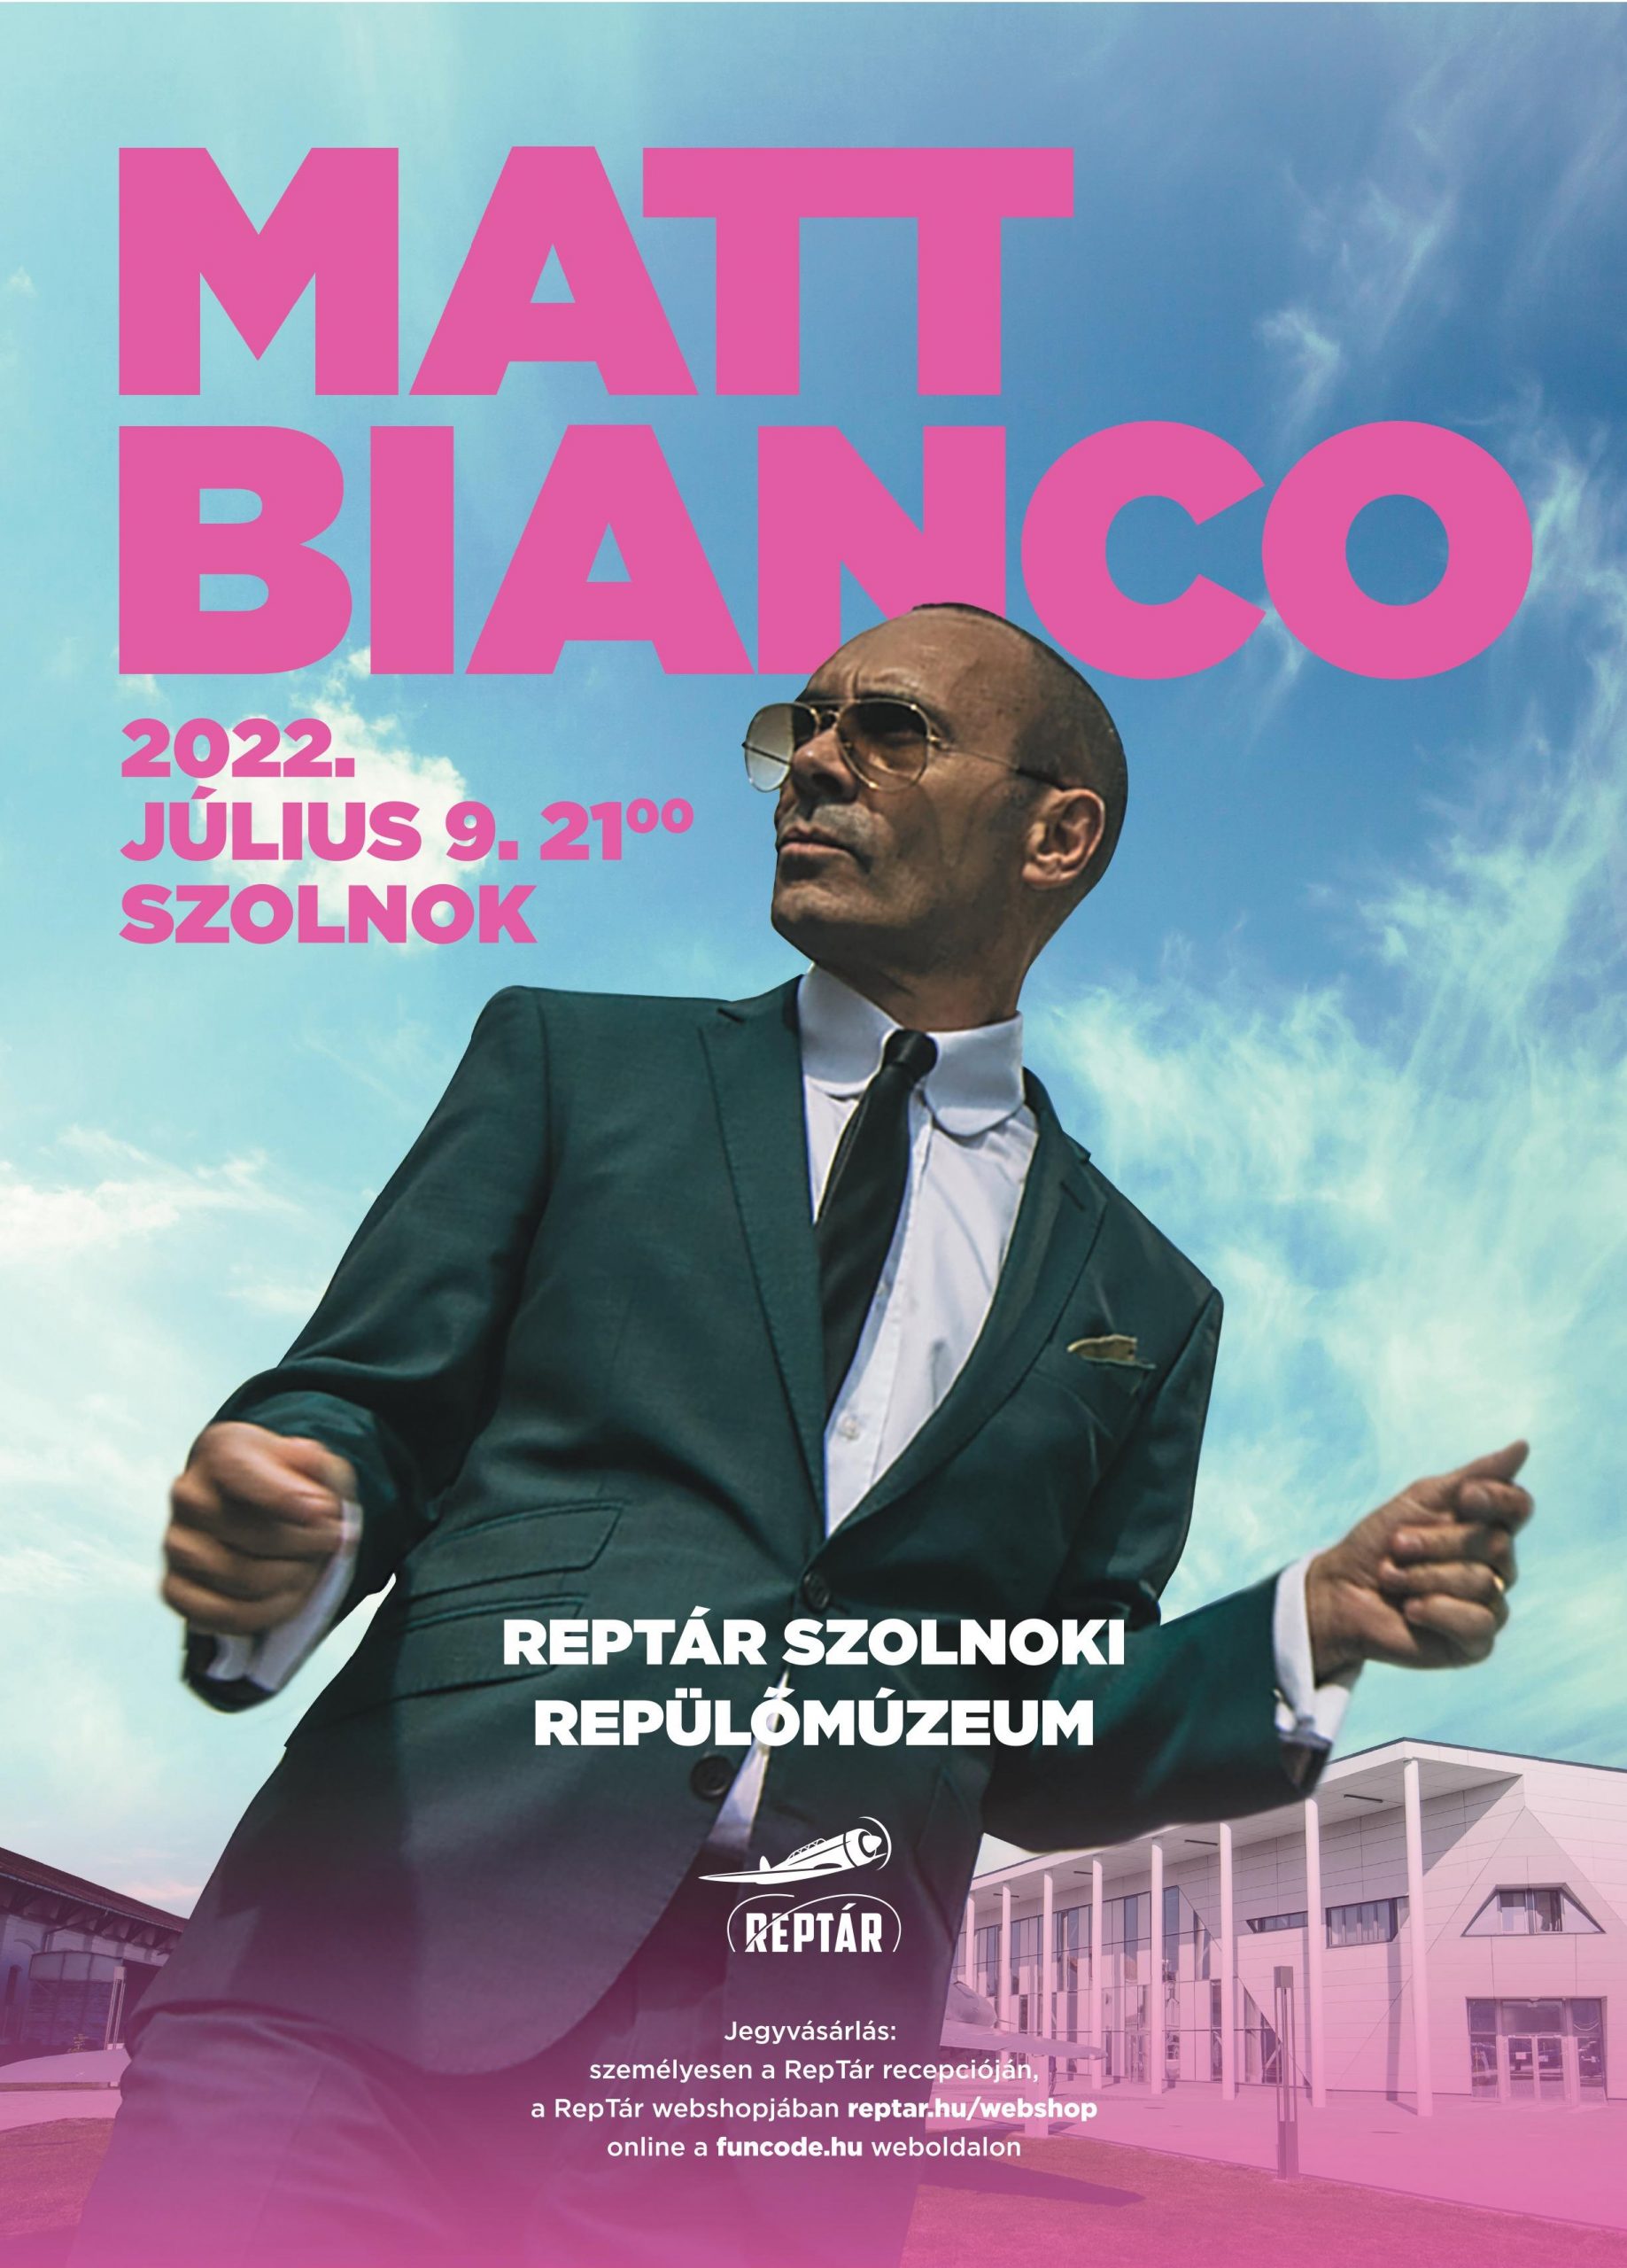 Világhírű zenekar, a Matt Bianco ad élő koncertet a RepTárban 2022. július 9-én